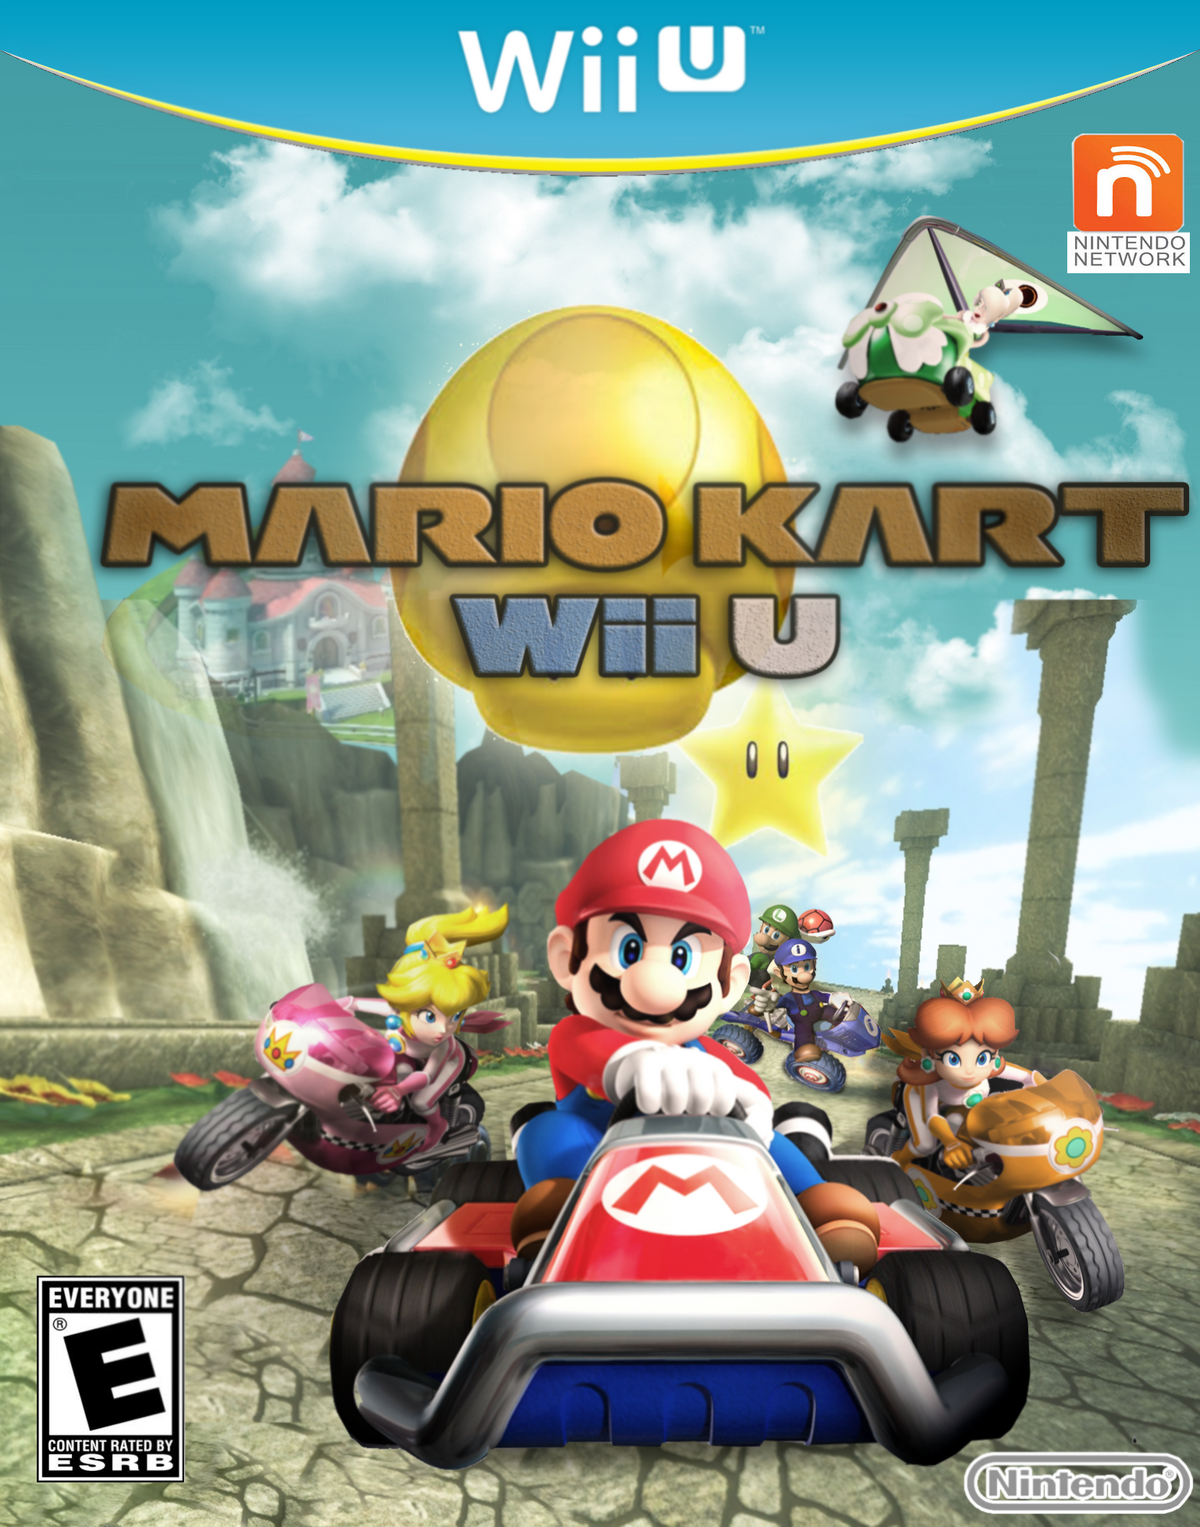 Mario Kart Wii U Fantendo Game Ideas And More Fandom 4953